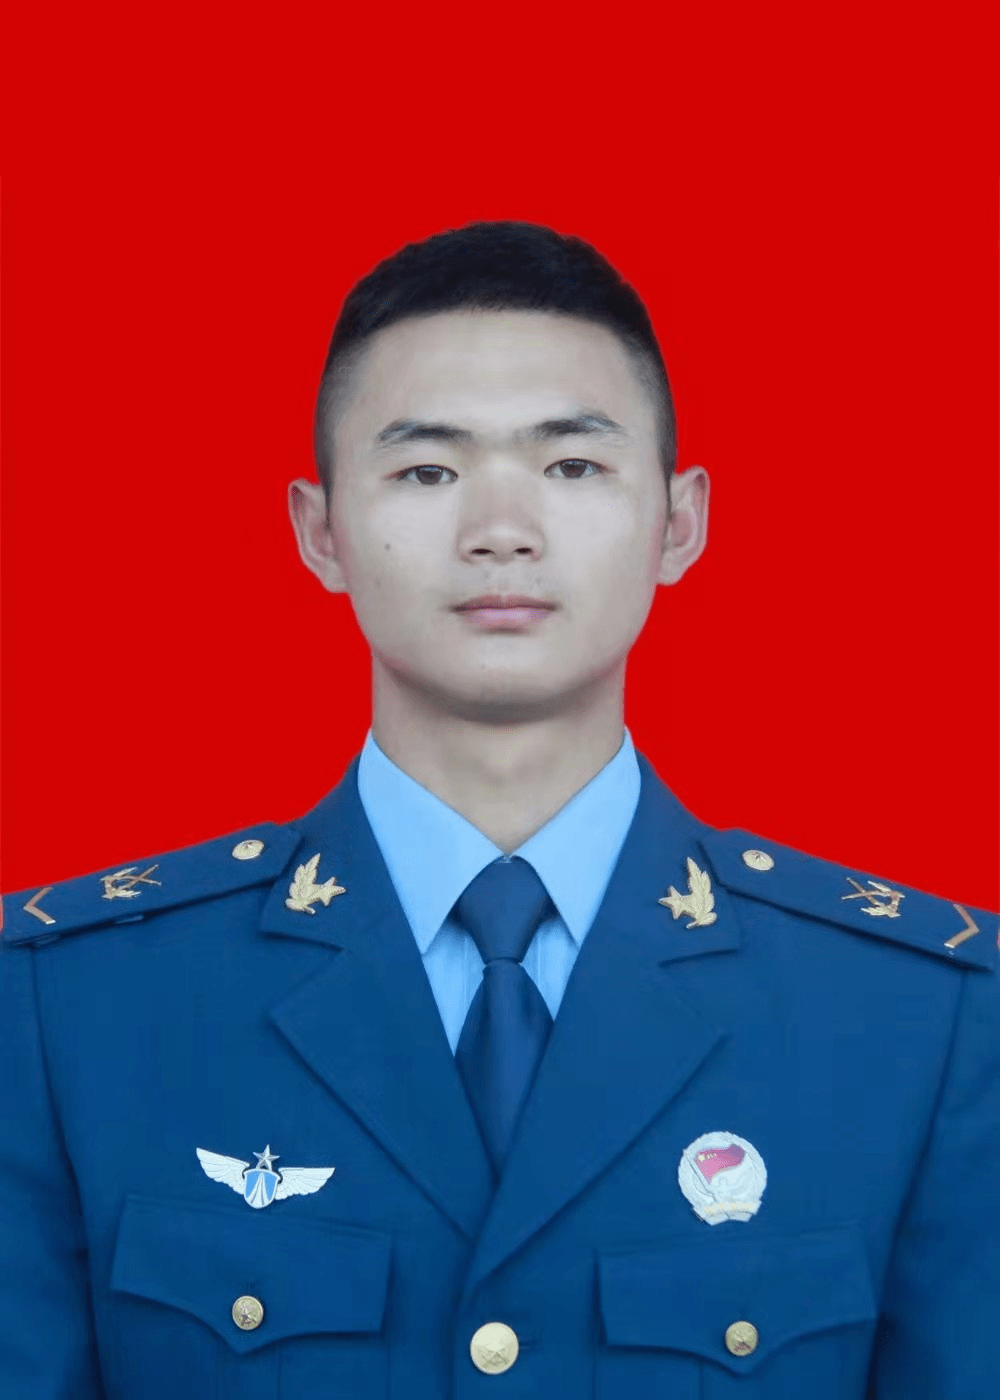 魏廷刚,男,汉族,2016年9月入伍,中共党员,空军某部班长,下士军衔